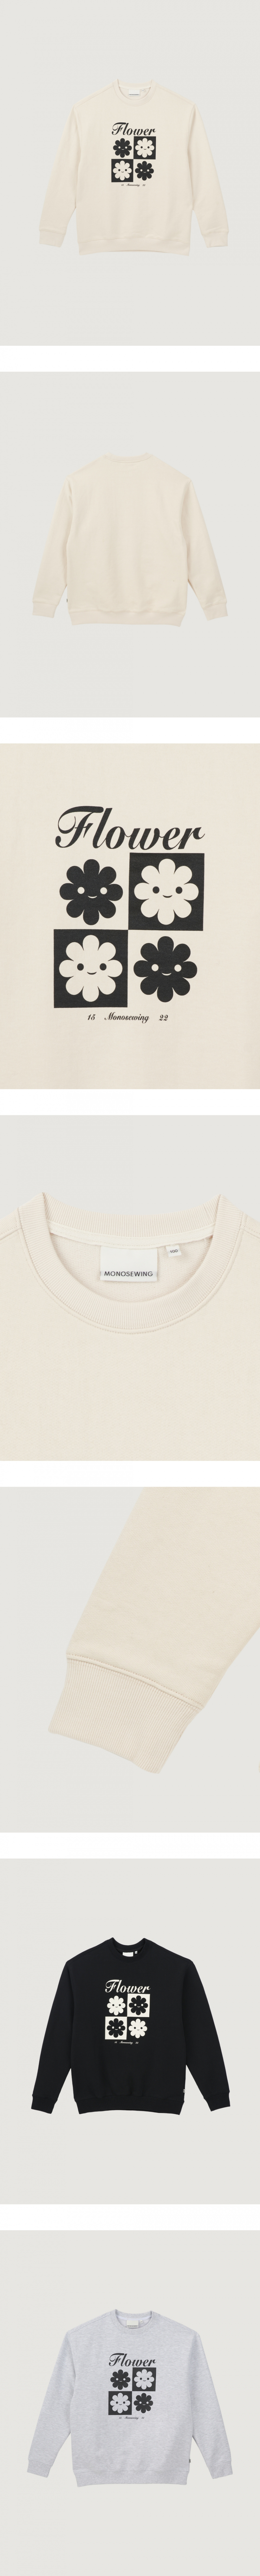 모노소잉(MONOSEWING) 체커보드 스웨트 셔츠 (크림)